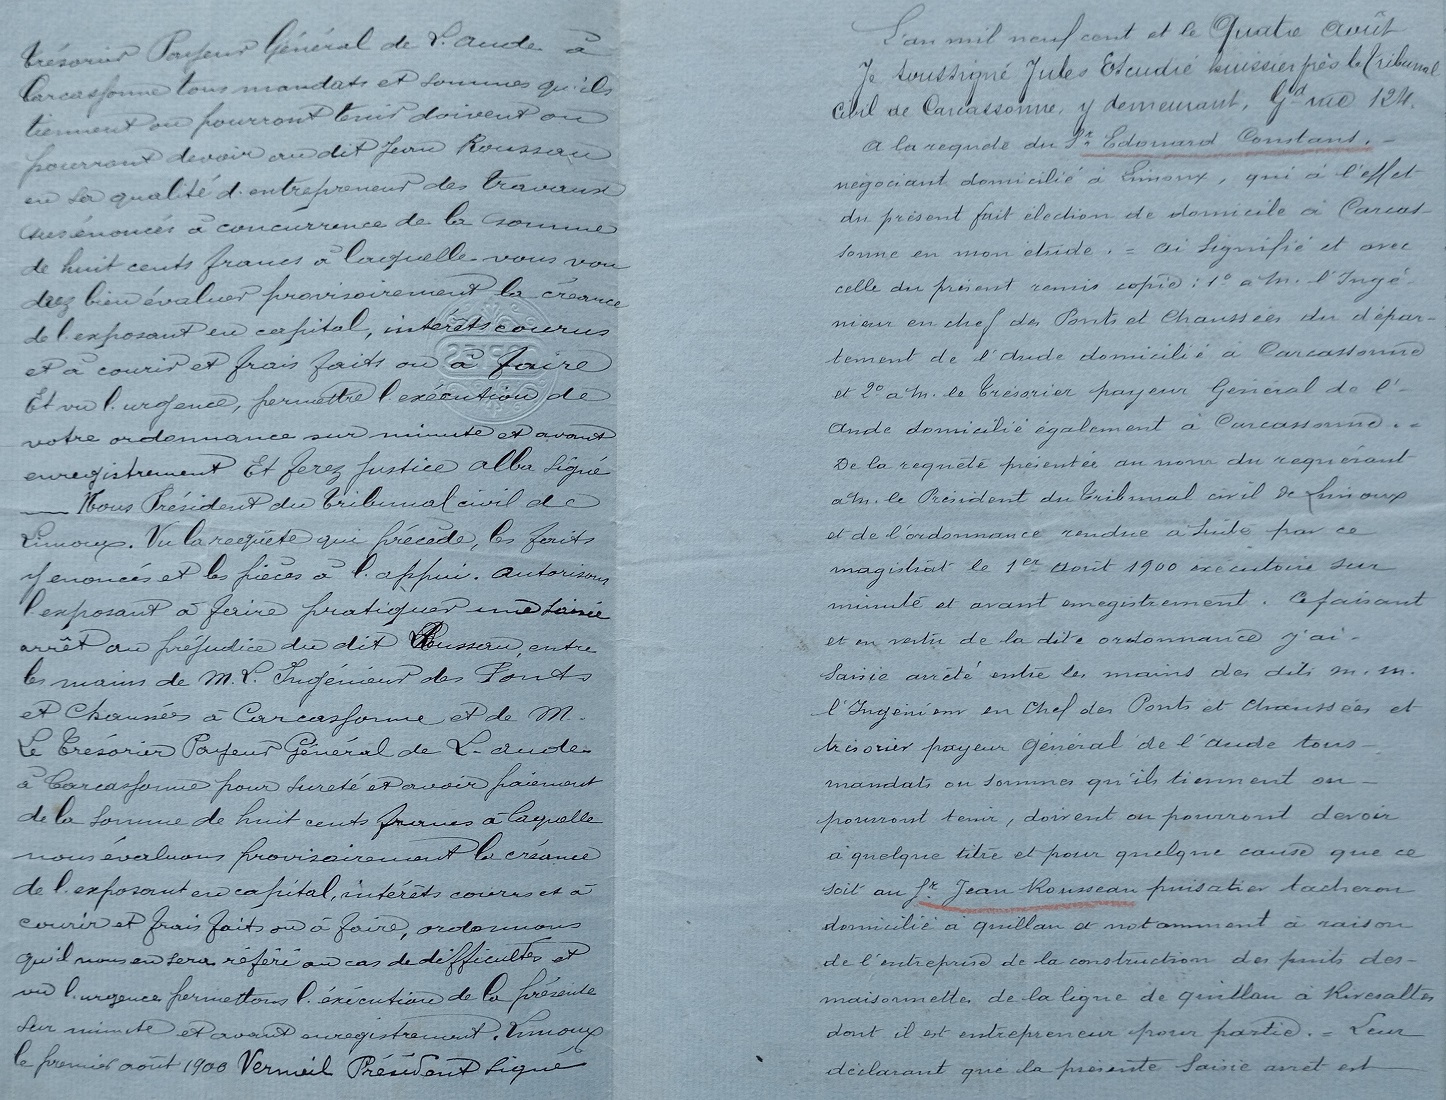 04 Août 1900 - Acte d'huissier à l'encontre de Jean Rousseau pour prélever sur sommes dû pour la construction des puits - 2